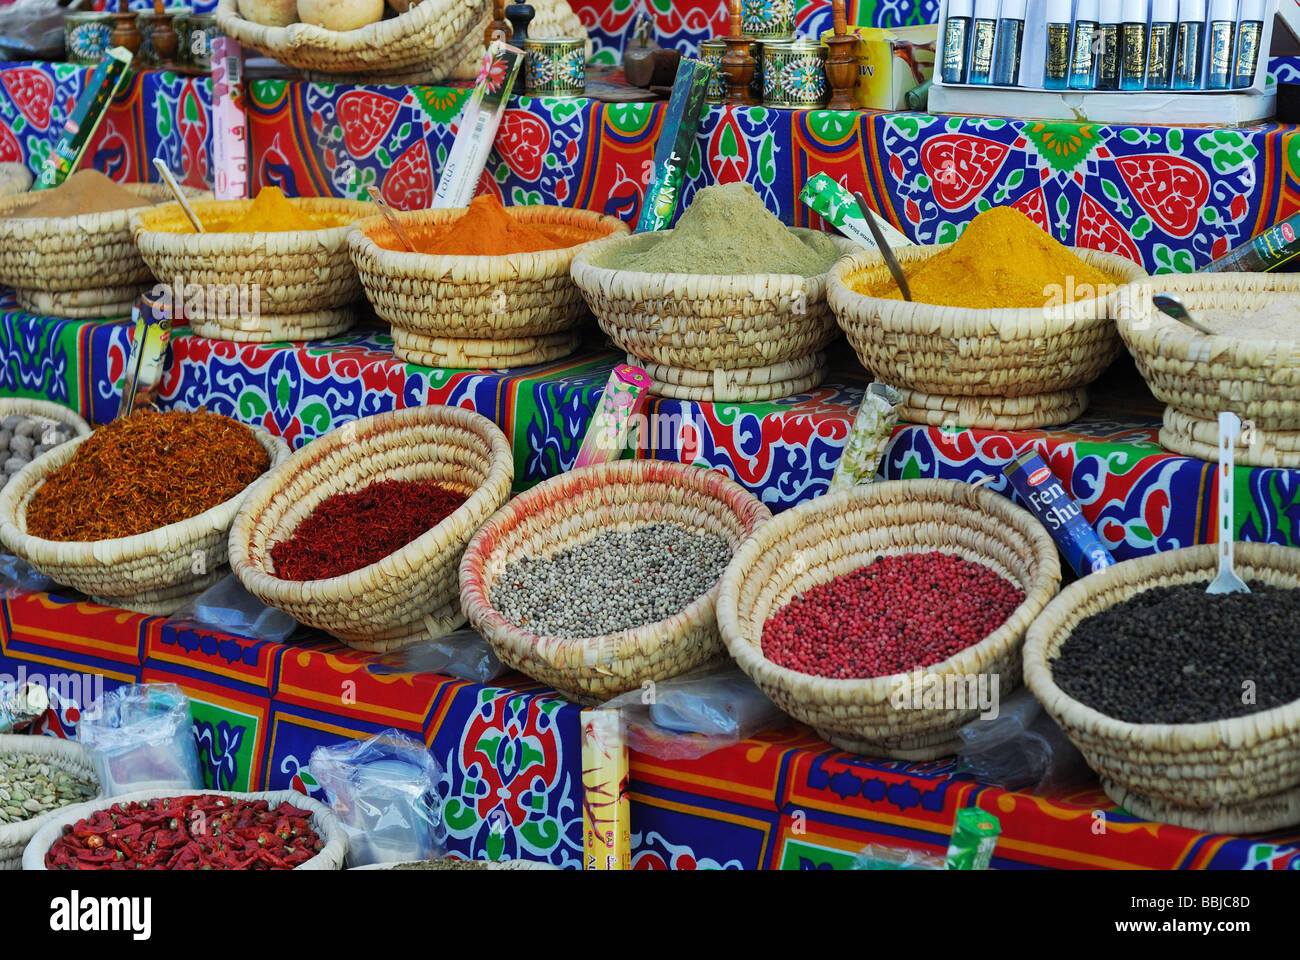 Kräuter und Gewürze auf dem alten Markt Sharm El Sheikh-Ägypten  Stockfotografie - Alamy